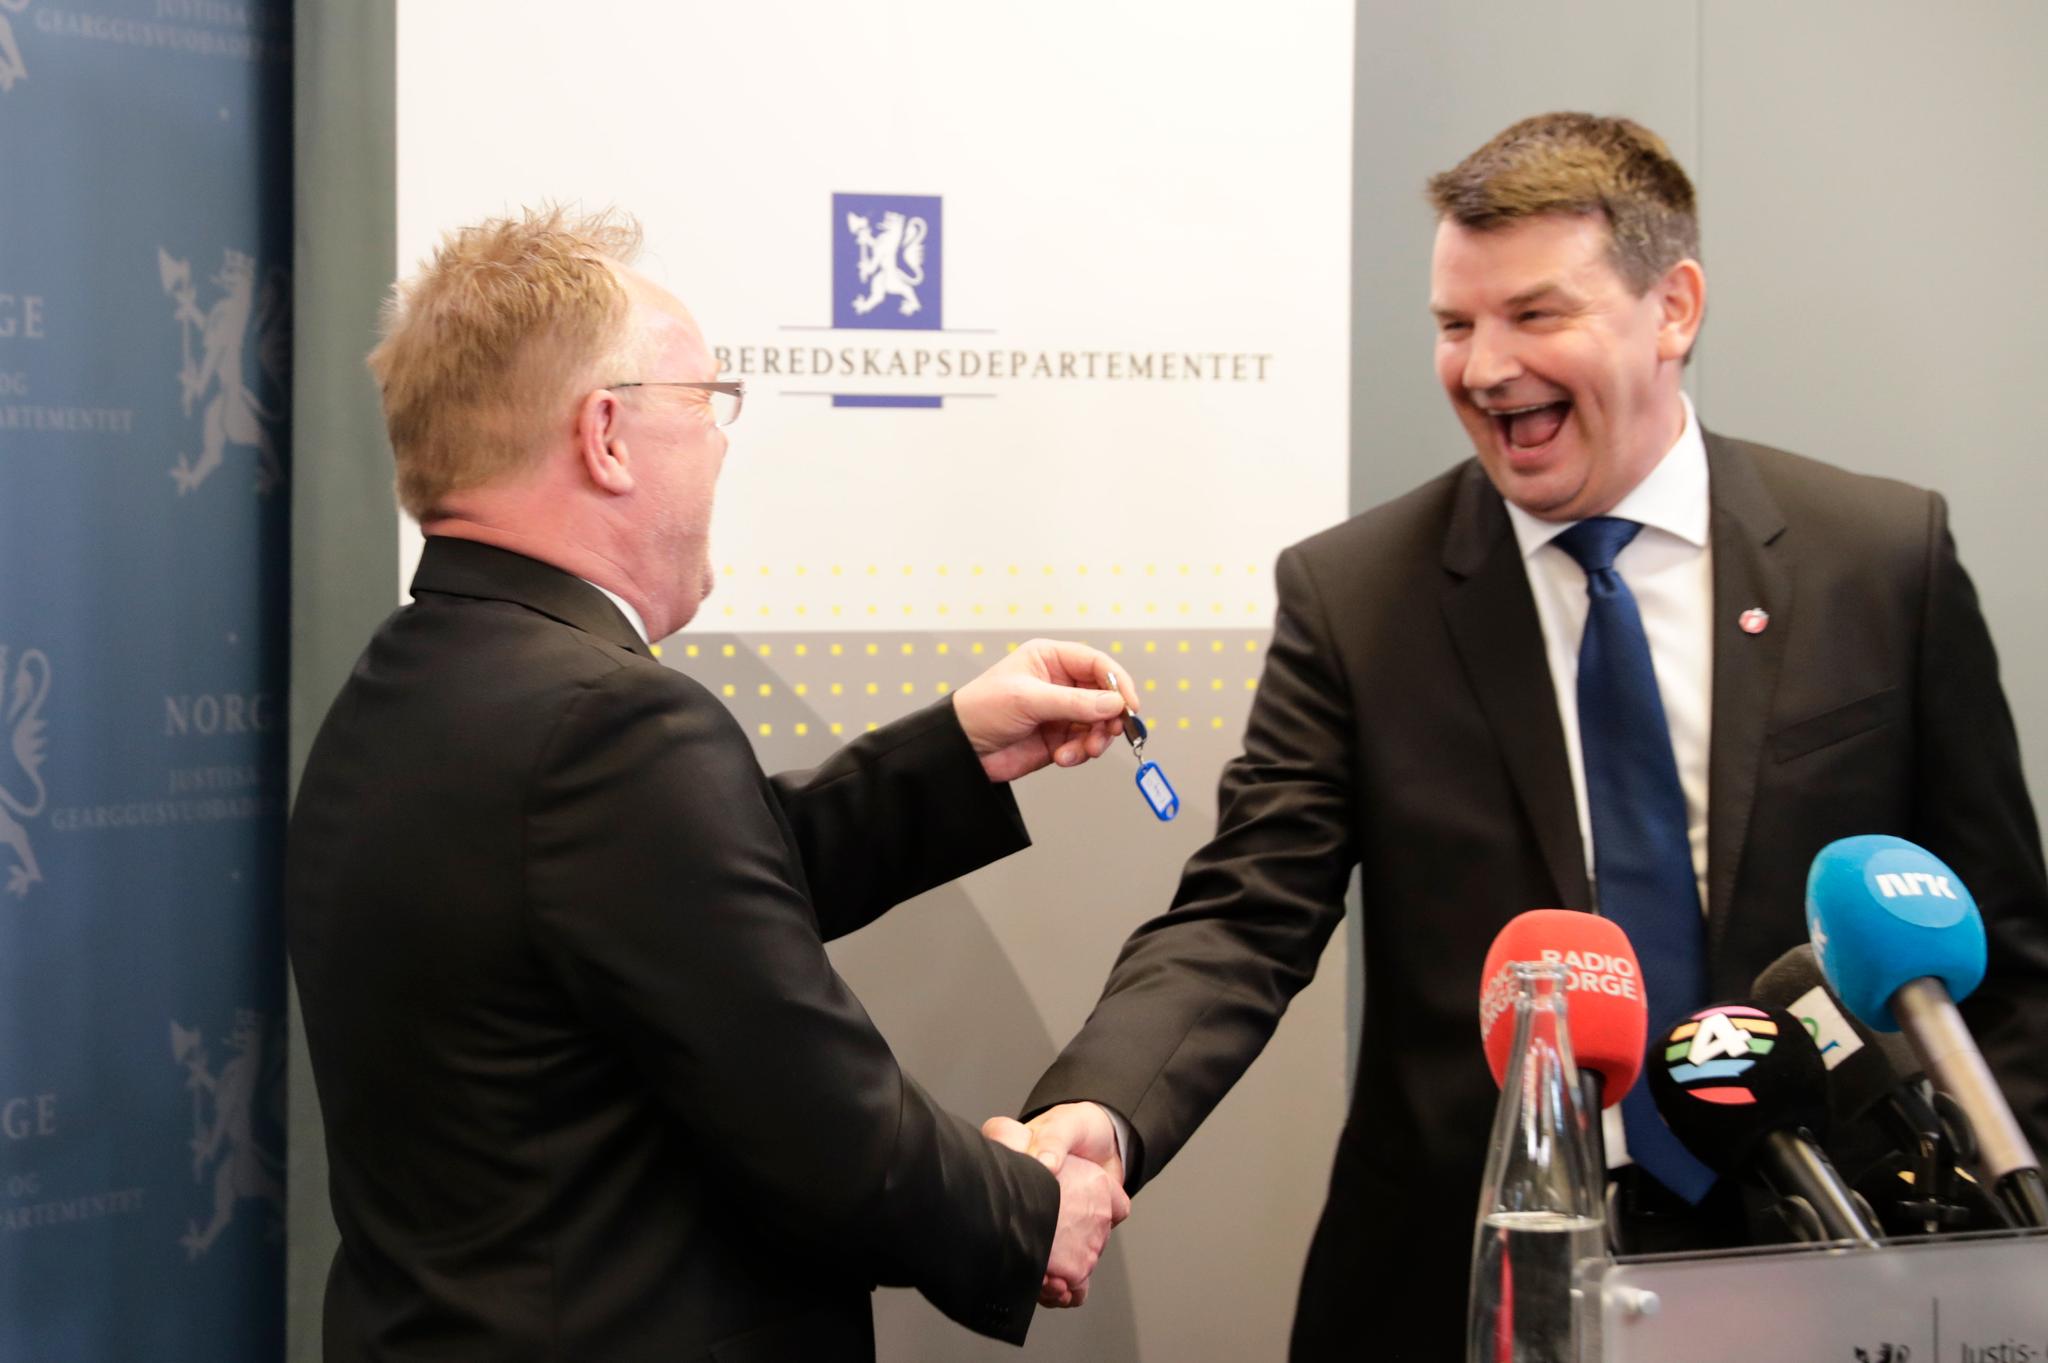 Tor Mikkel Wara overtok stafettpinnen fra den midlertidige justisministeren Per Sandberg onsdag ettermiddag.s